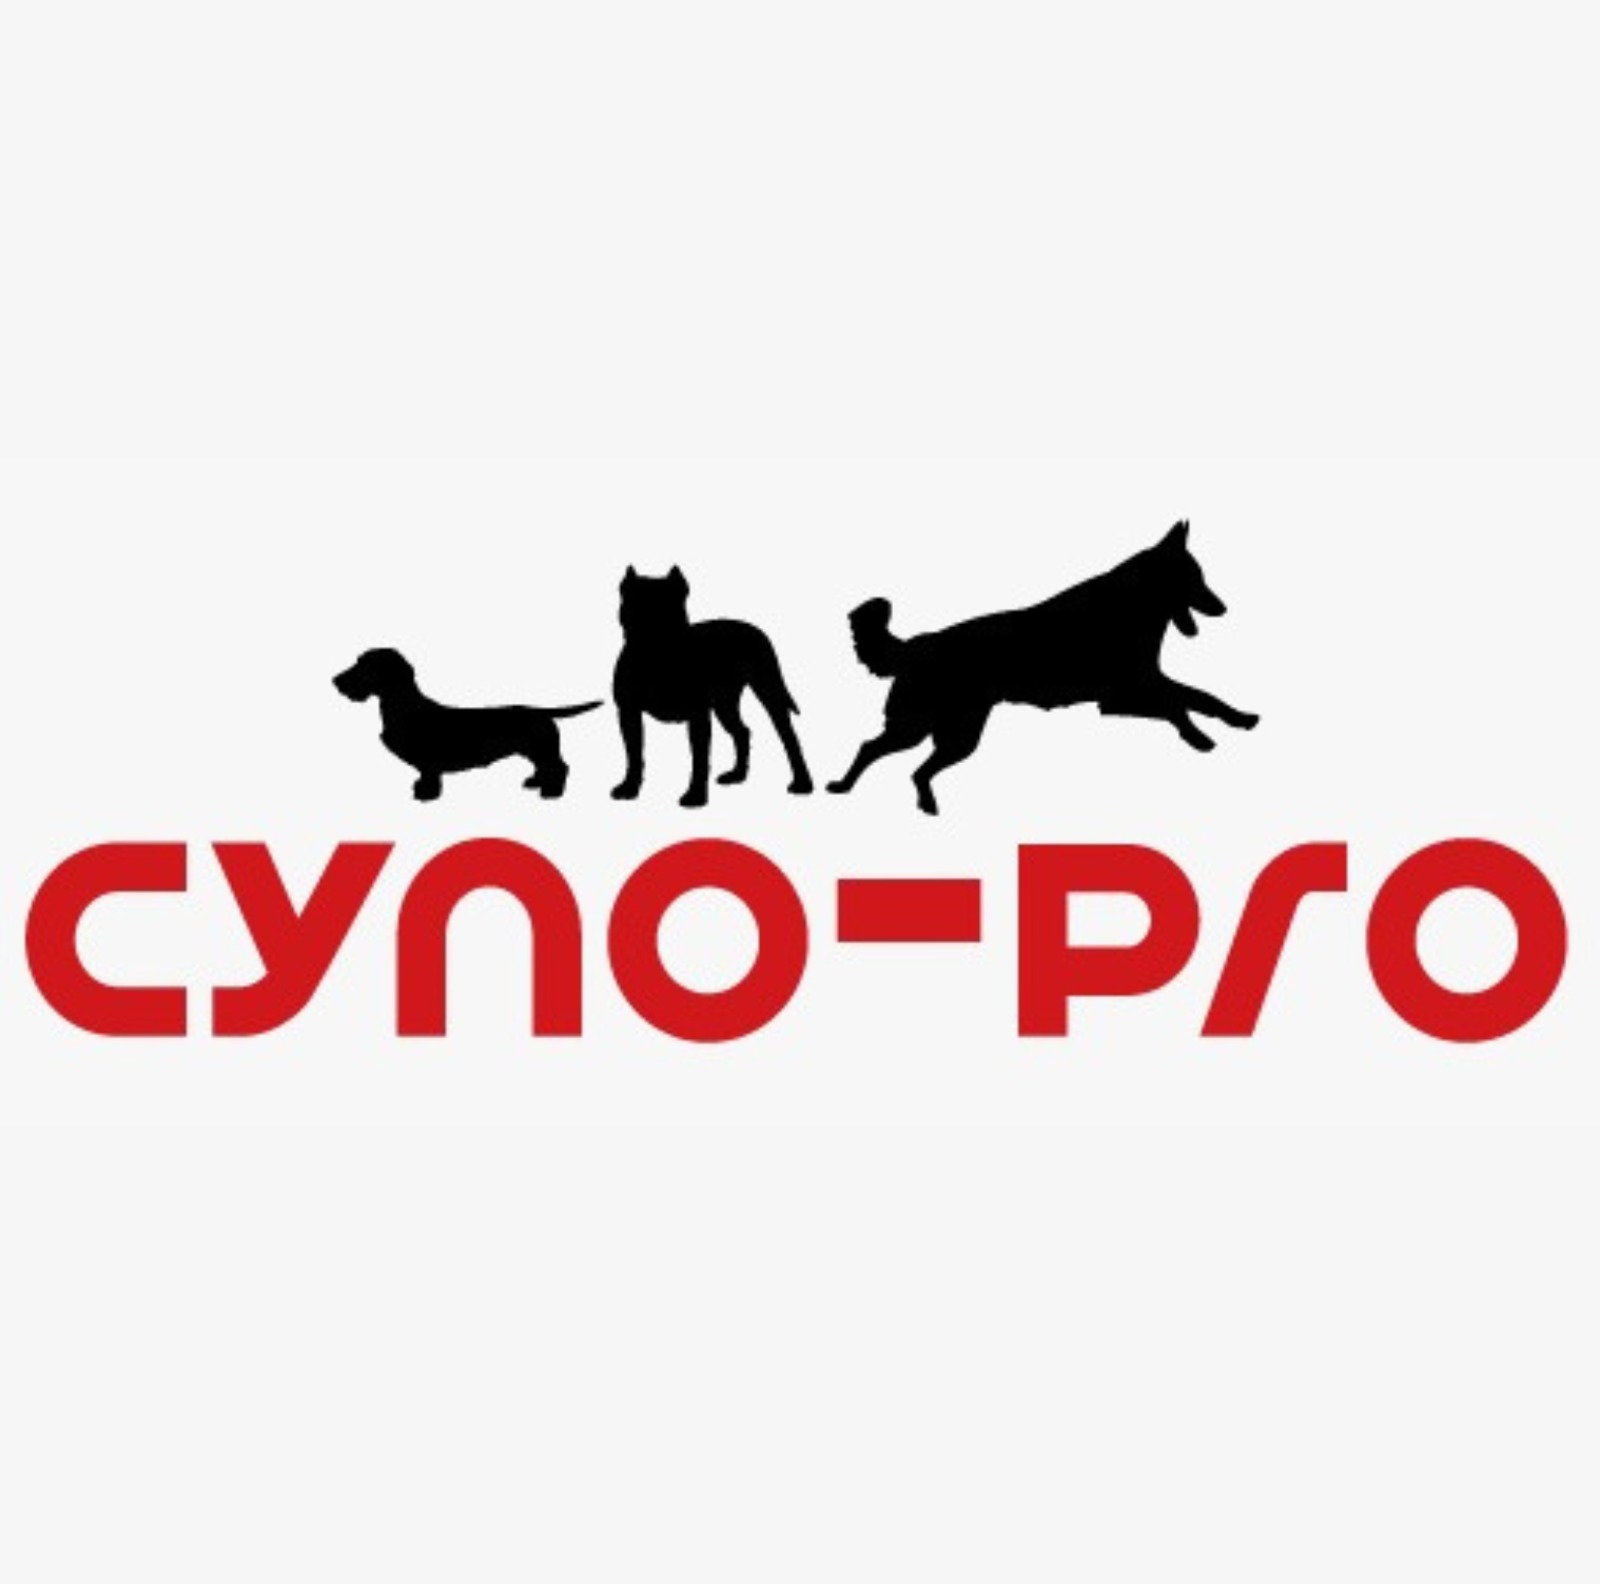 Cyno pro partenaire Gt pets